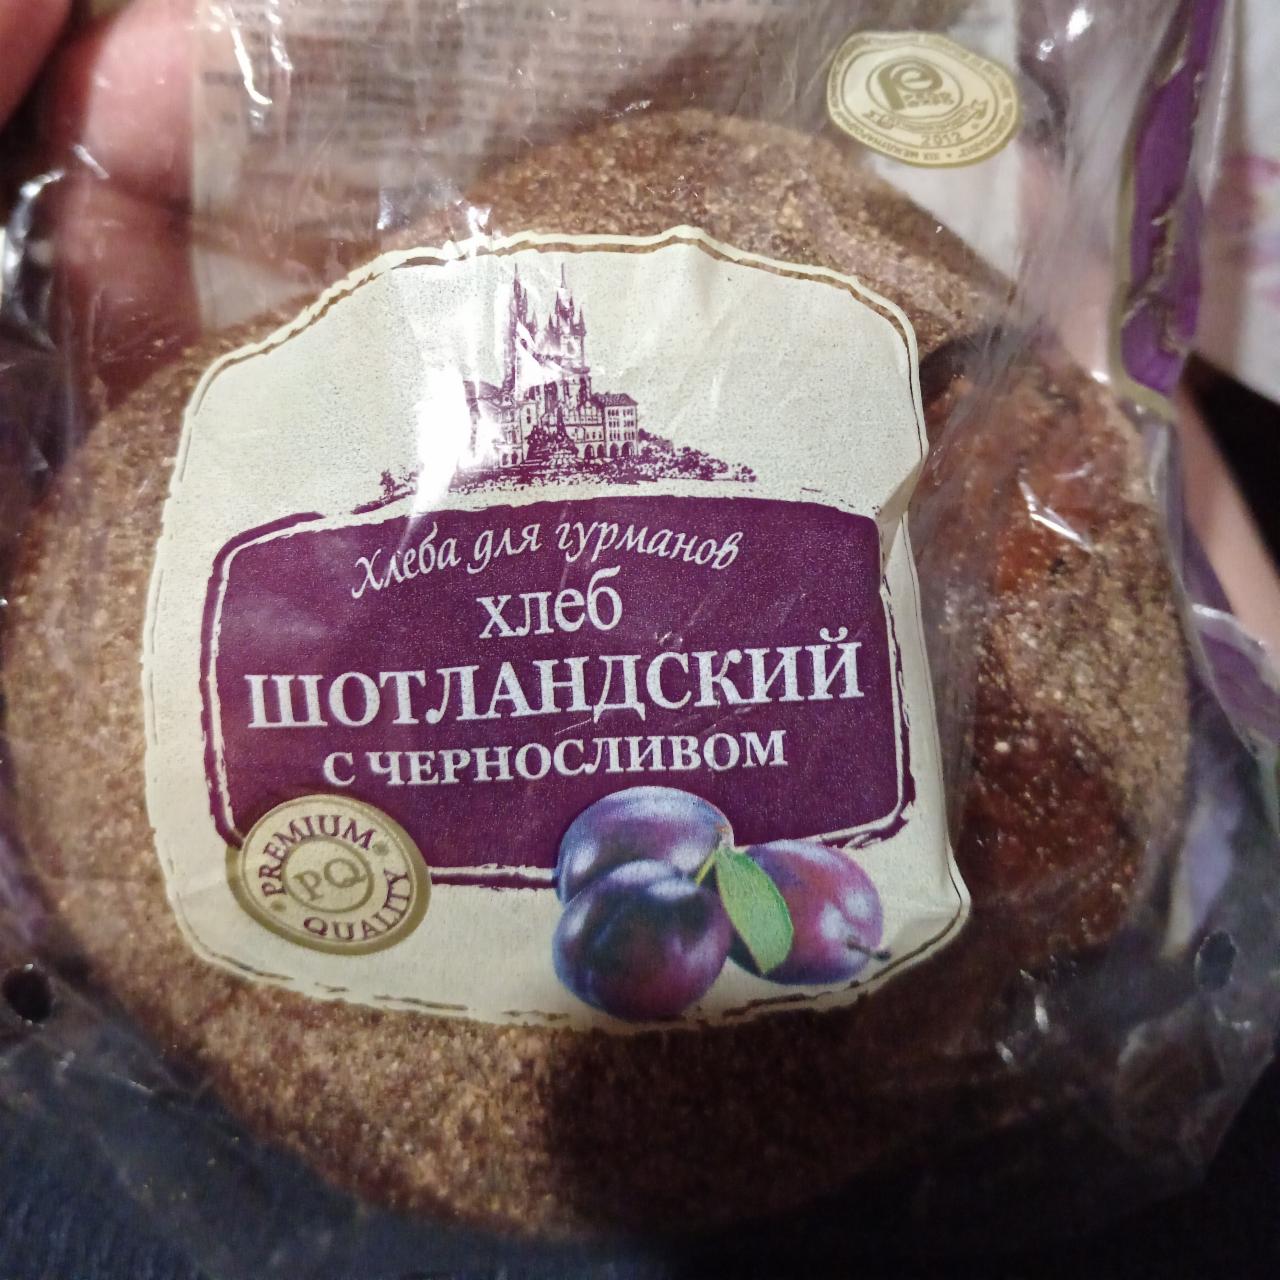 Фото - Хлебная смесь Хлеб шотландский с черносливом и солодом С.Пудовъ